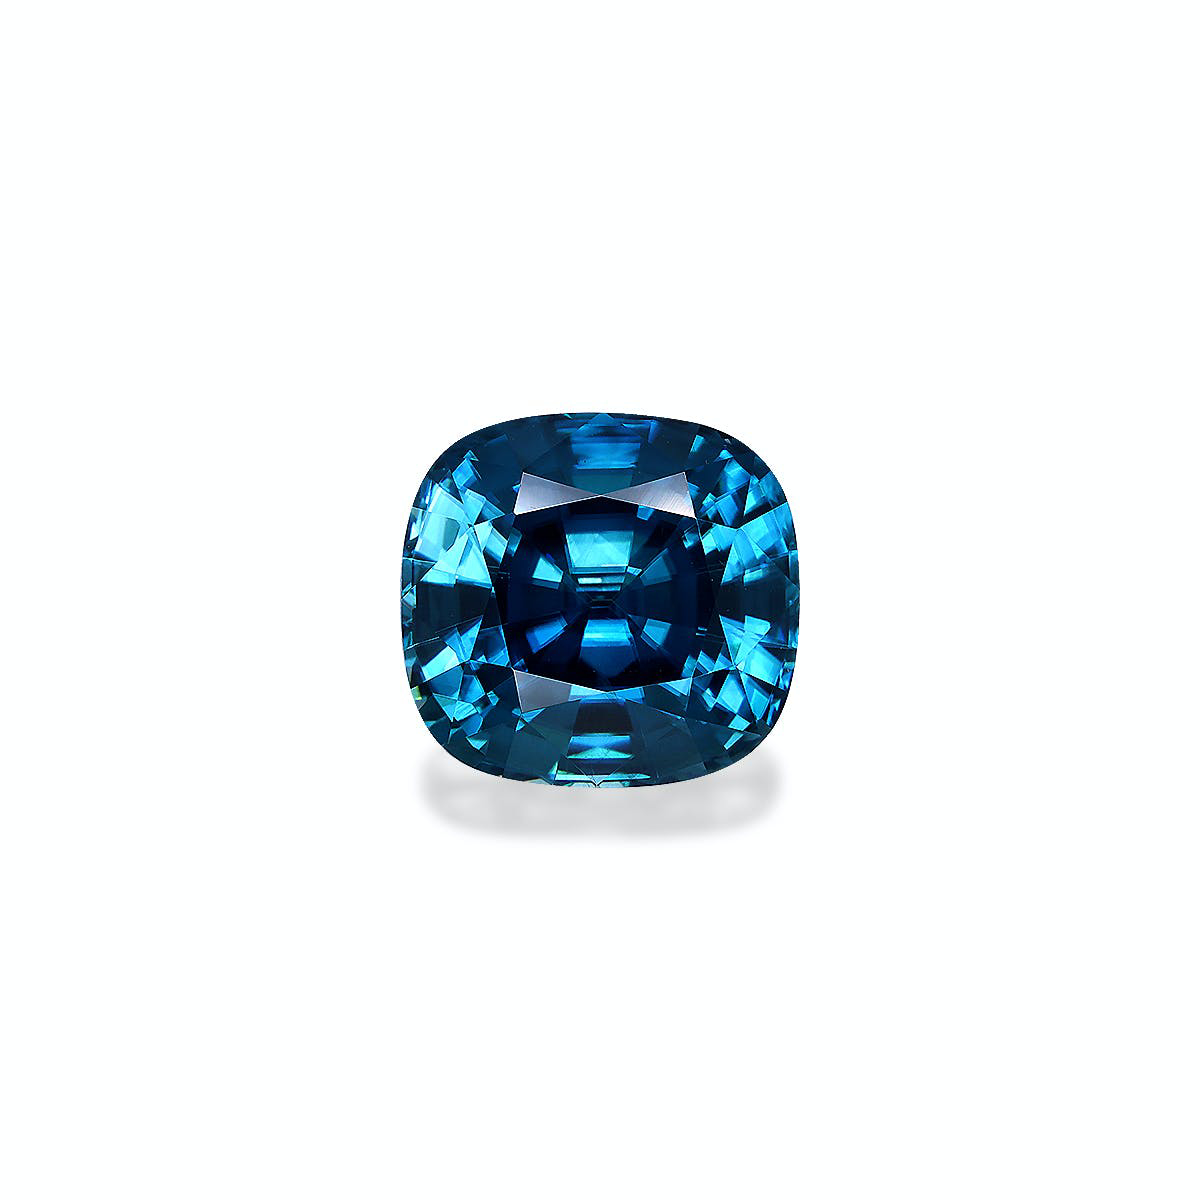 Cobalt Blue Zircon 10.58ct - 11mm (ZI0749)